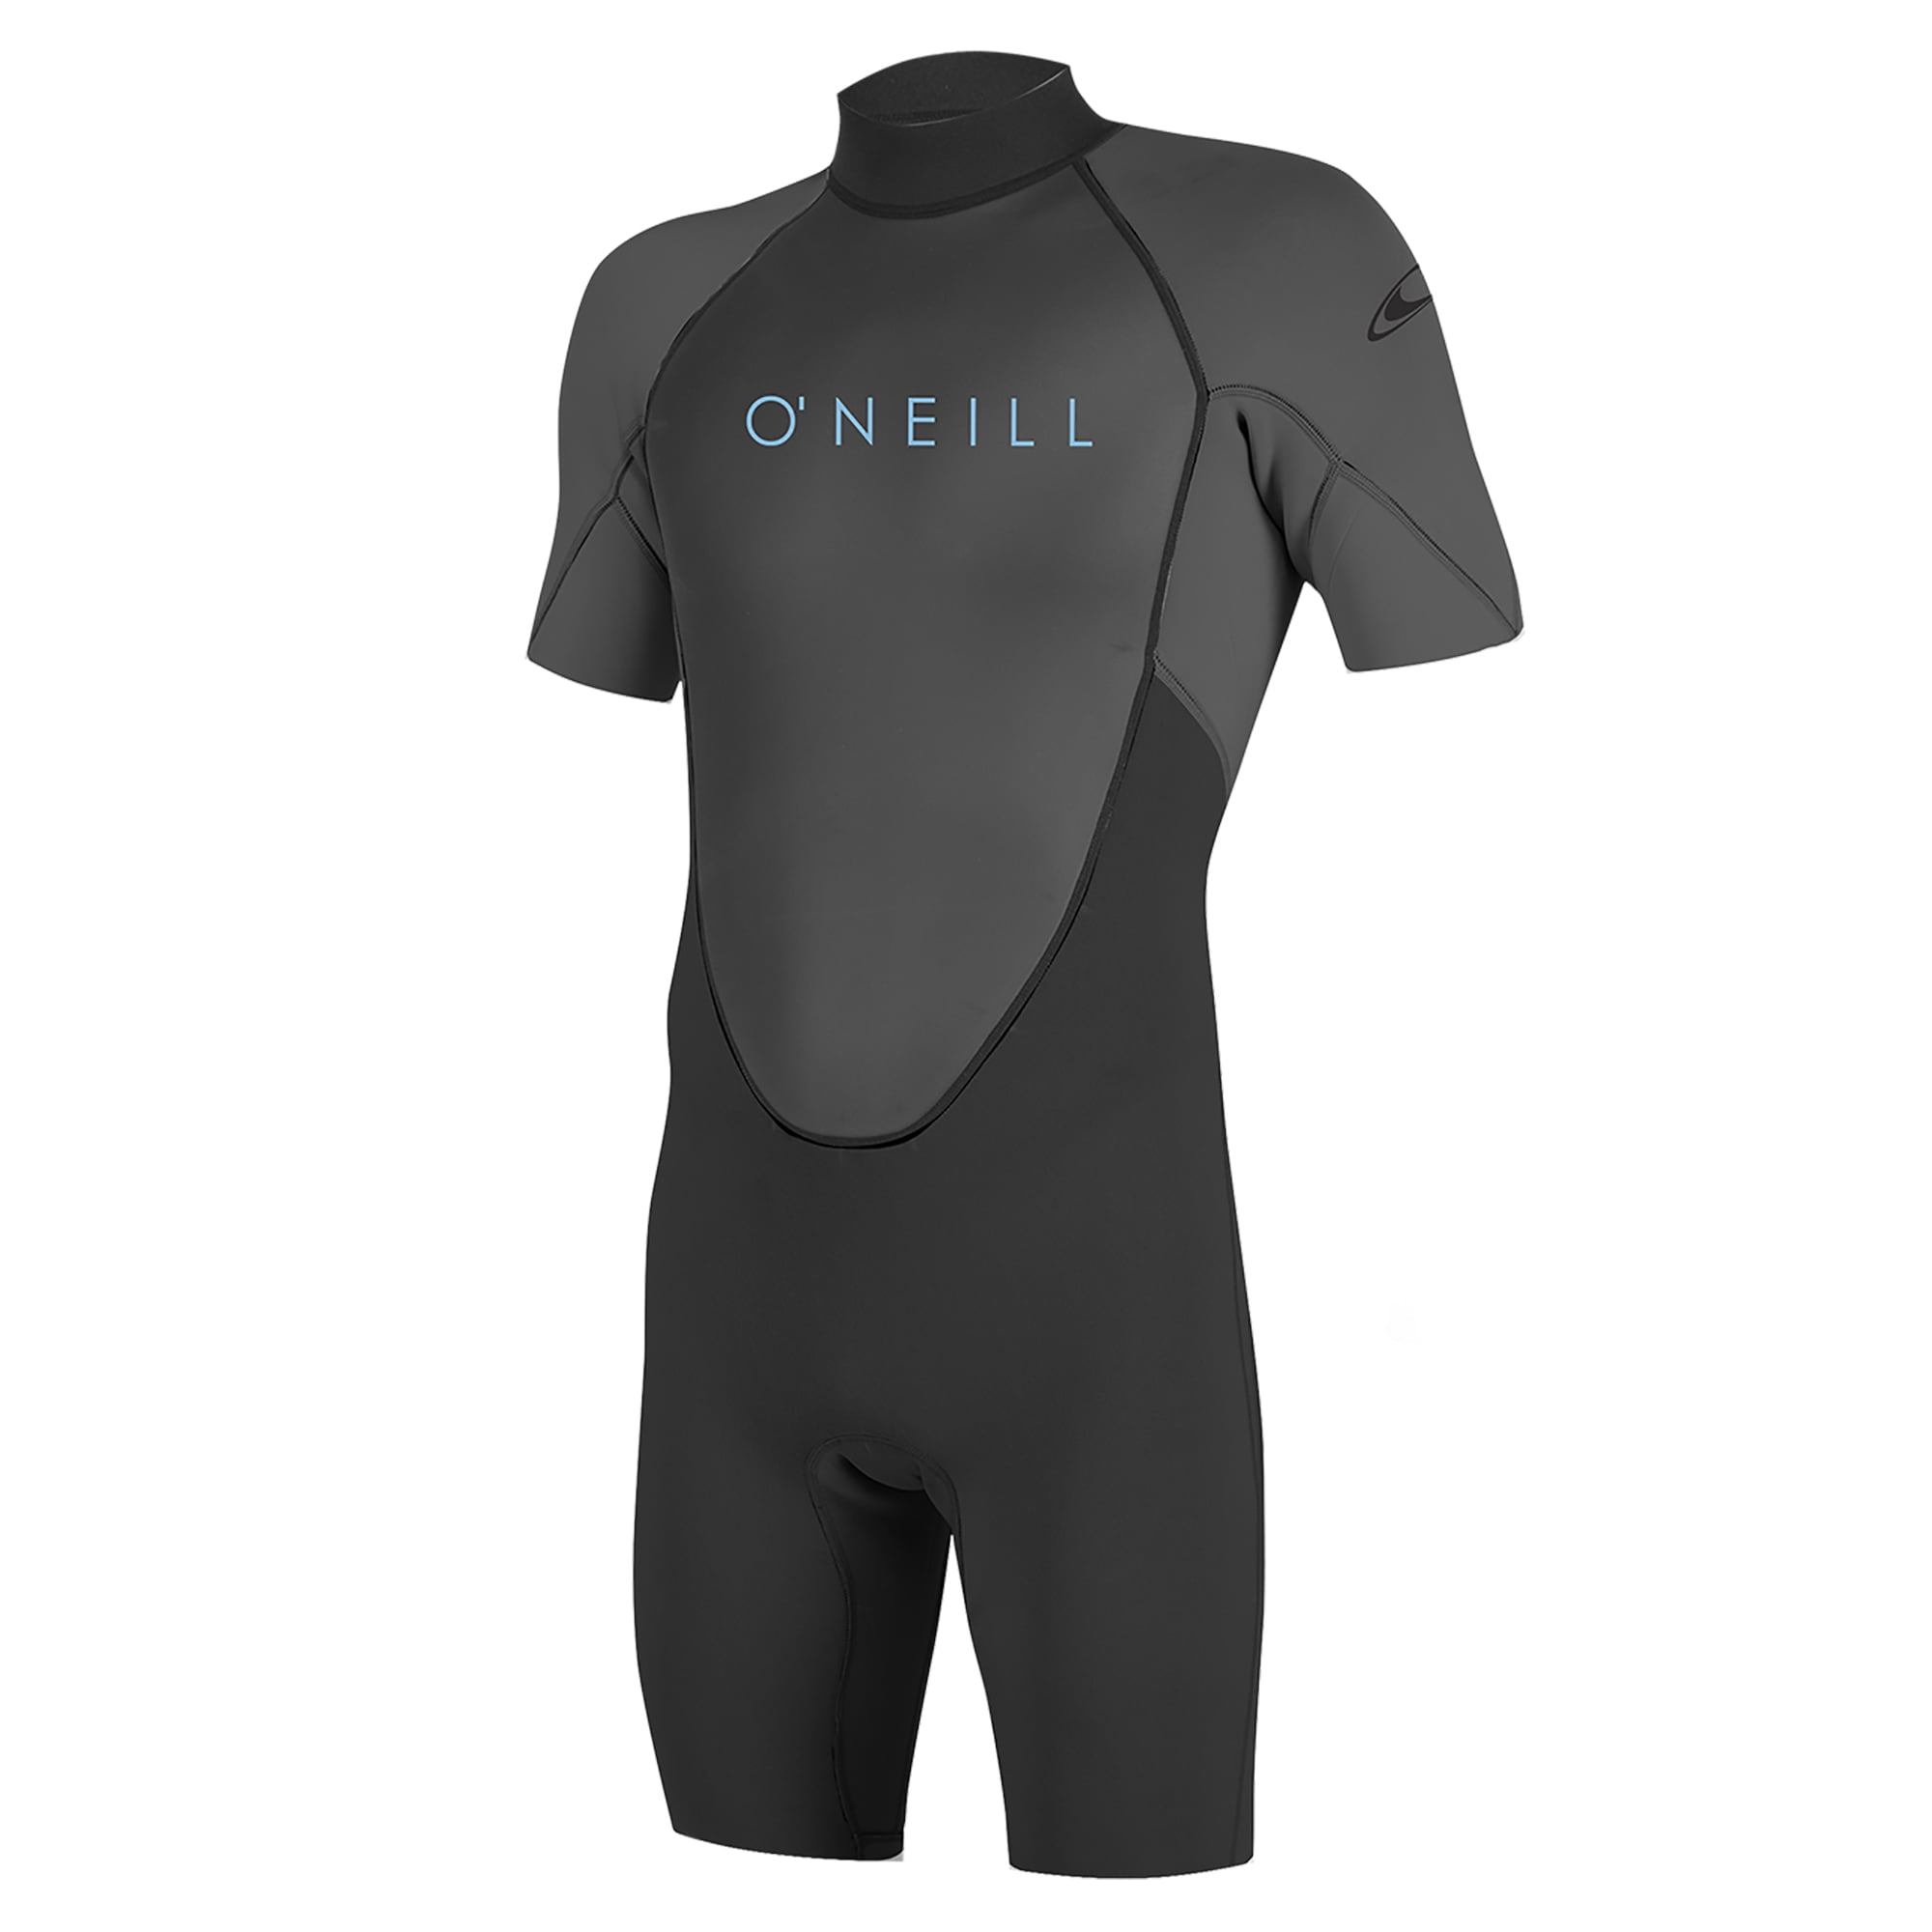 O'Neill Reactor Kids Full Body 3mm/2mm Neoprene Wetsuit Surf Scuba Snorkel 